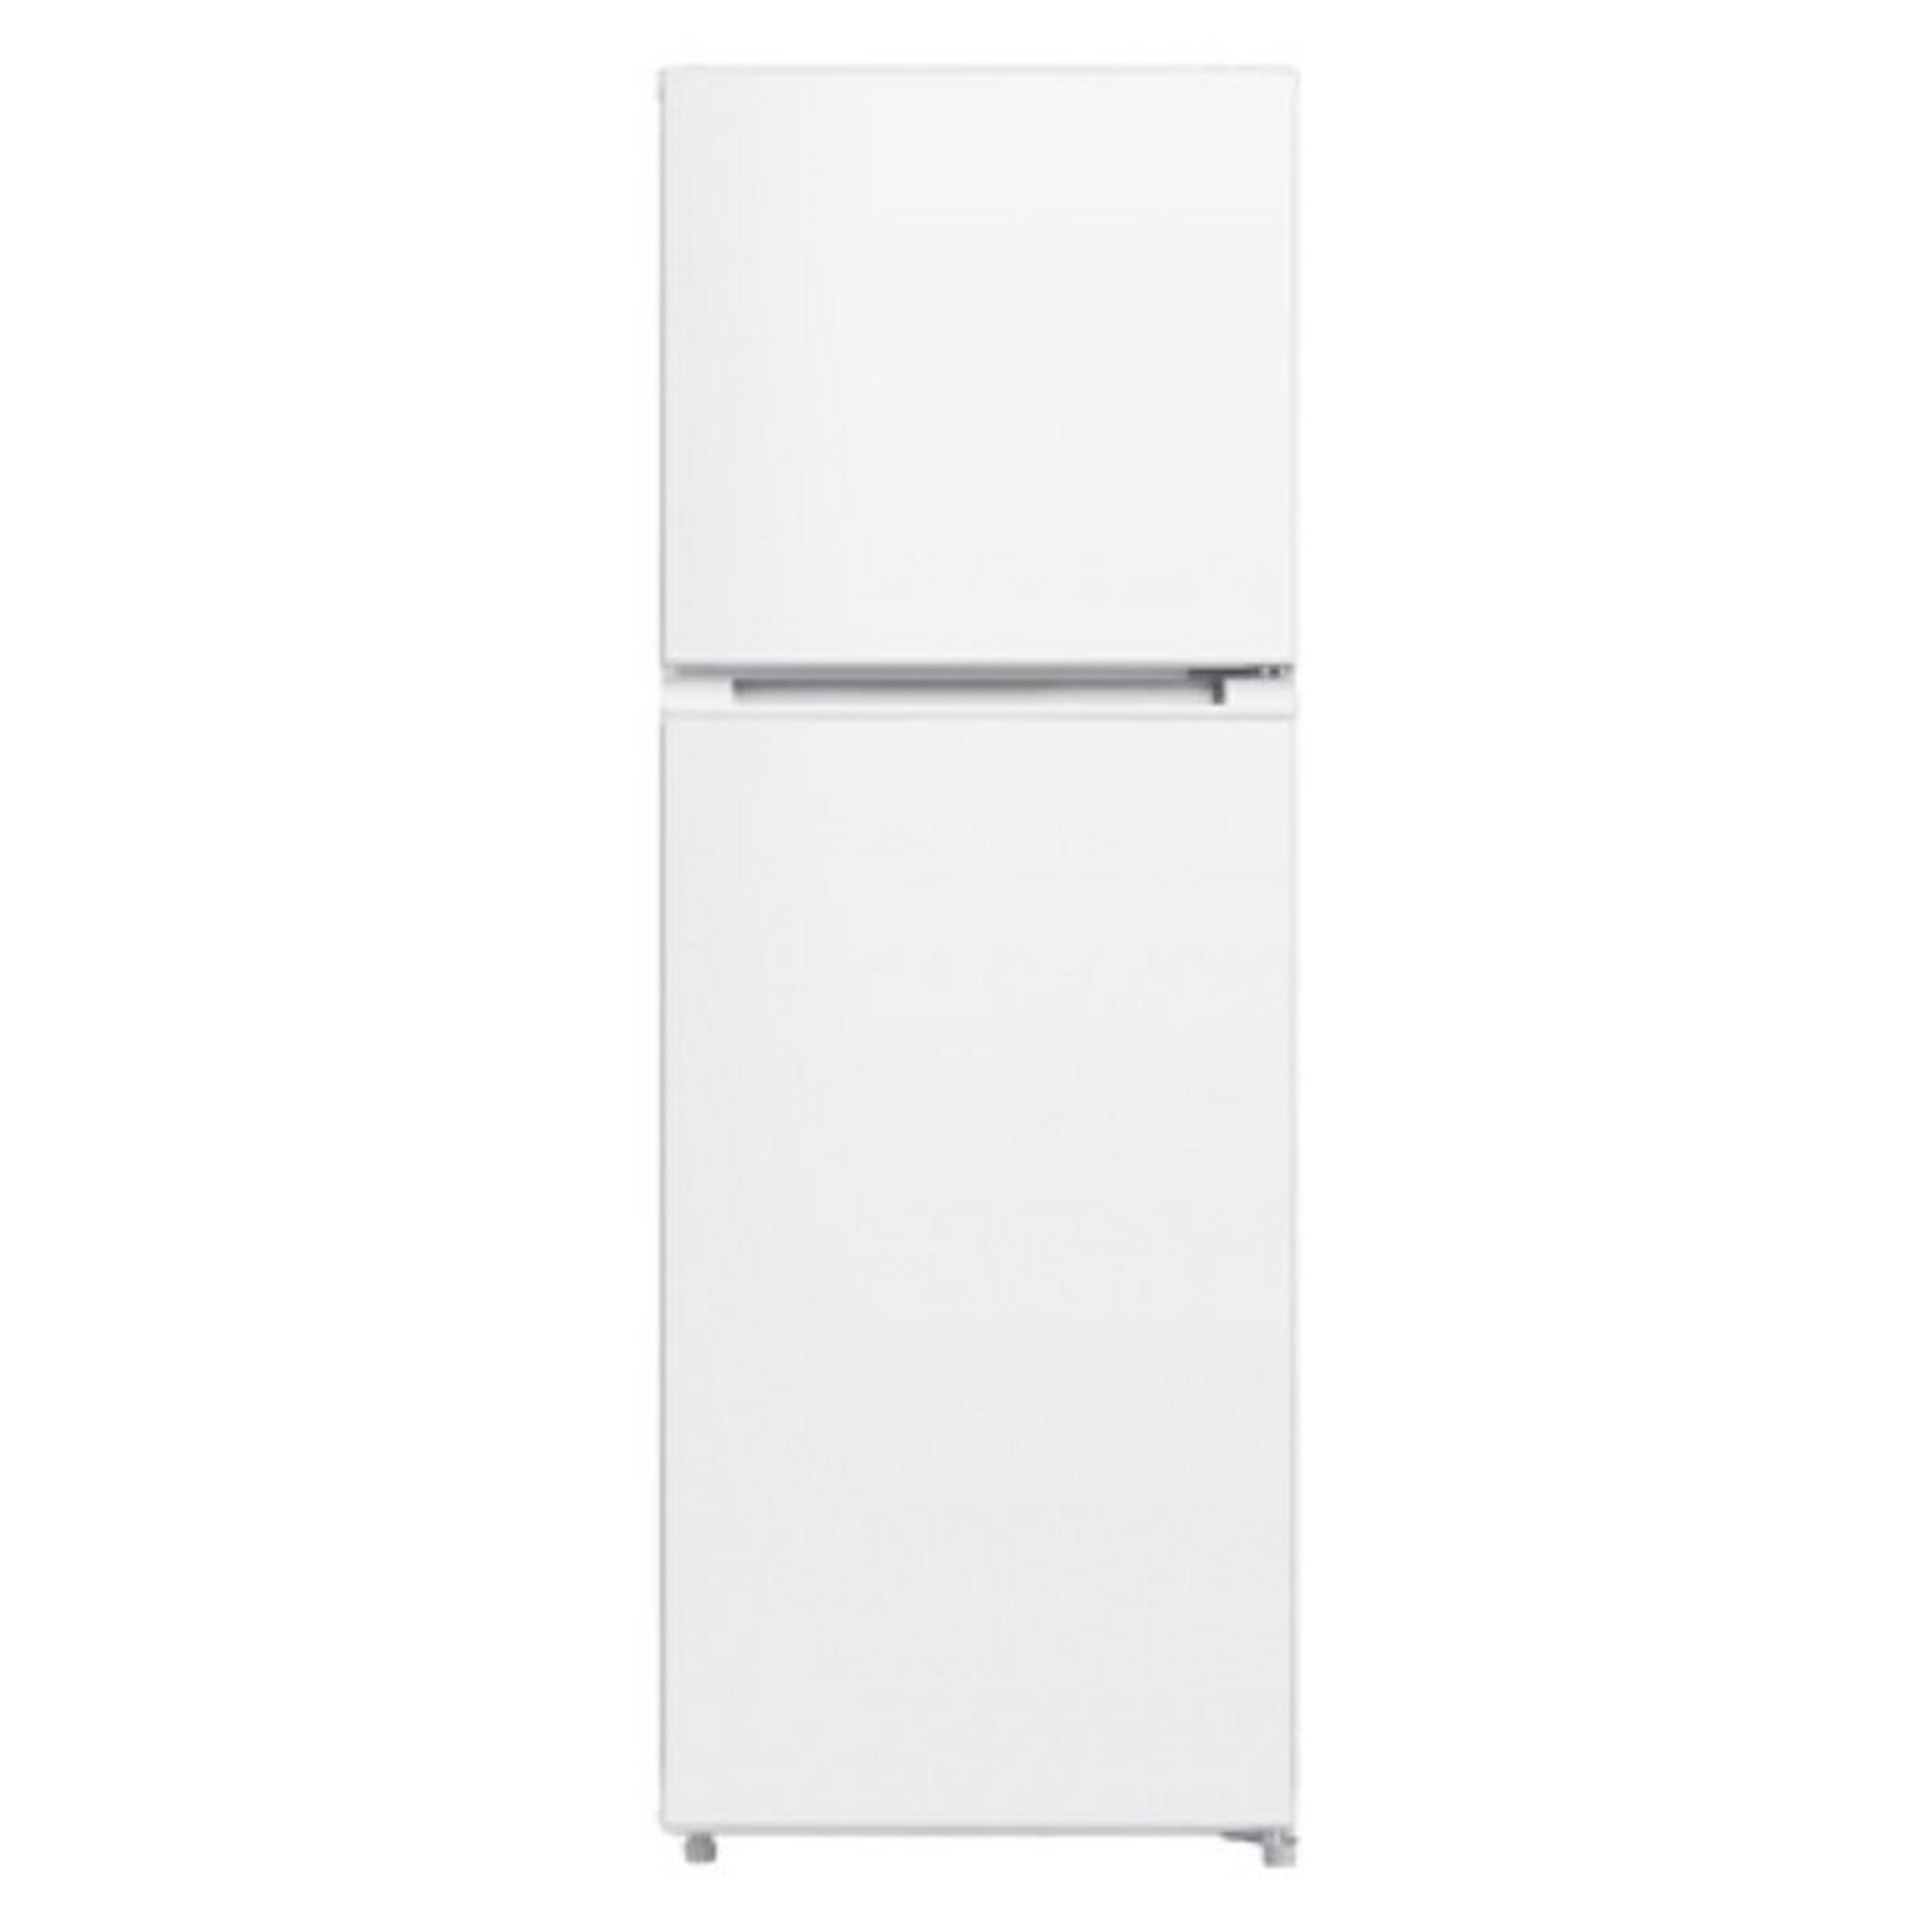 Wansa Gold Front Load Washing Machine +  Wansa Gas Cooker + Wansa Top Freezer Refrigerator